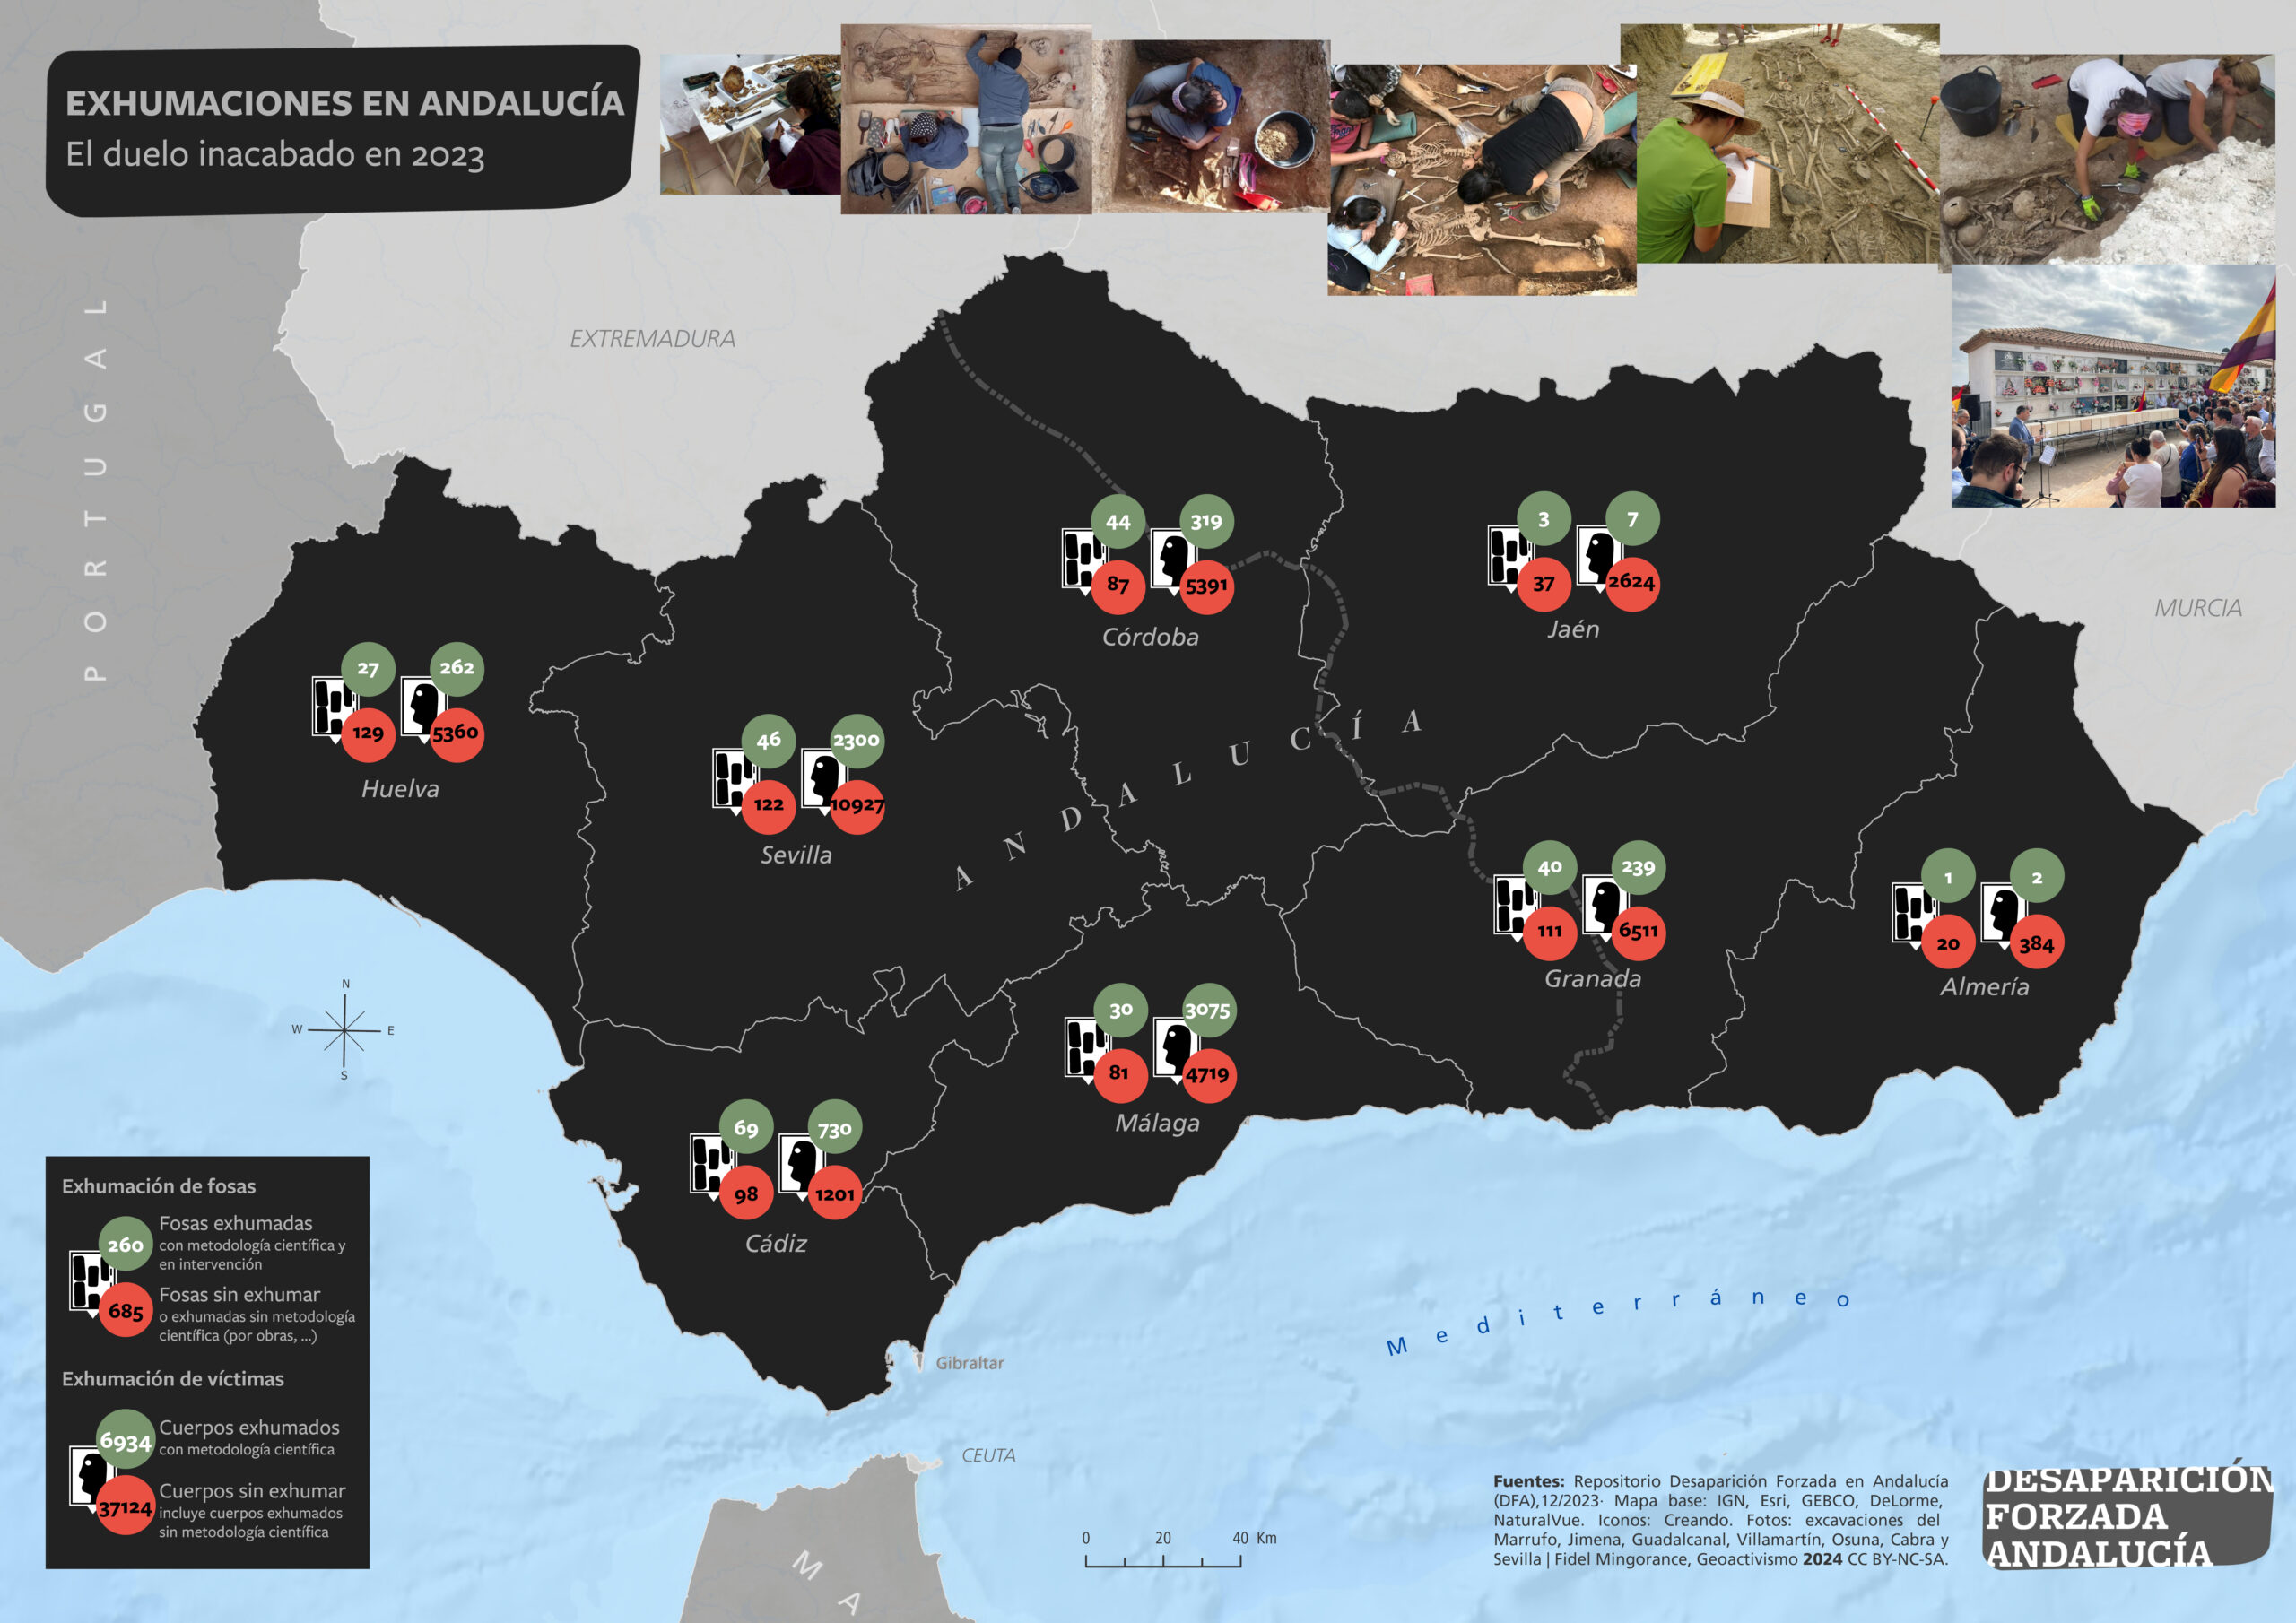 Exhumaciones en Andalucía. El duelo inacabado en 2023